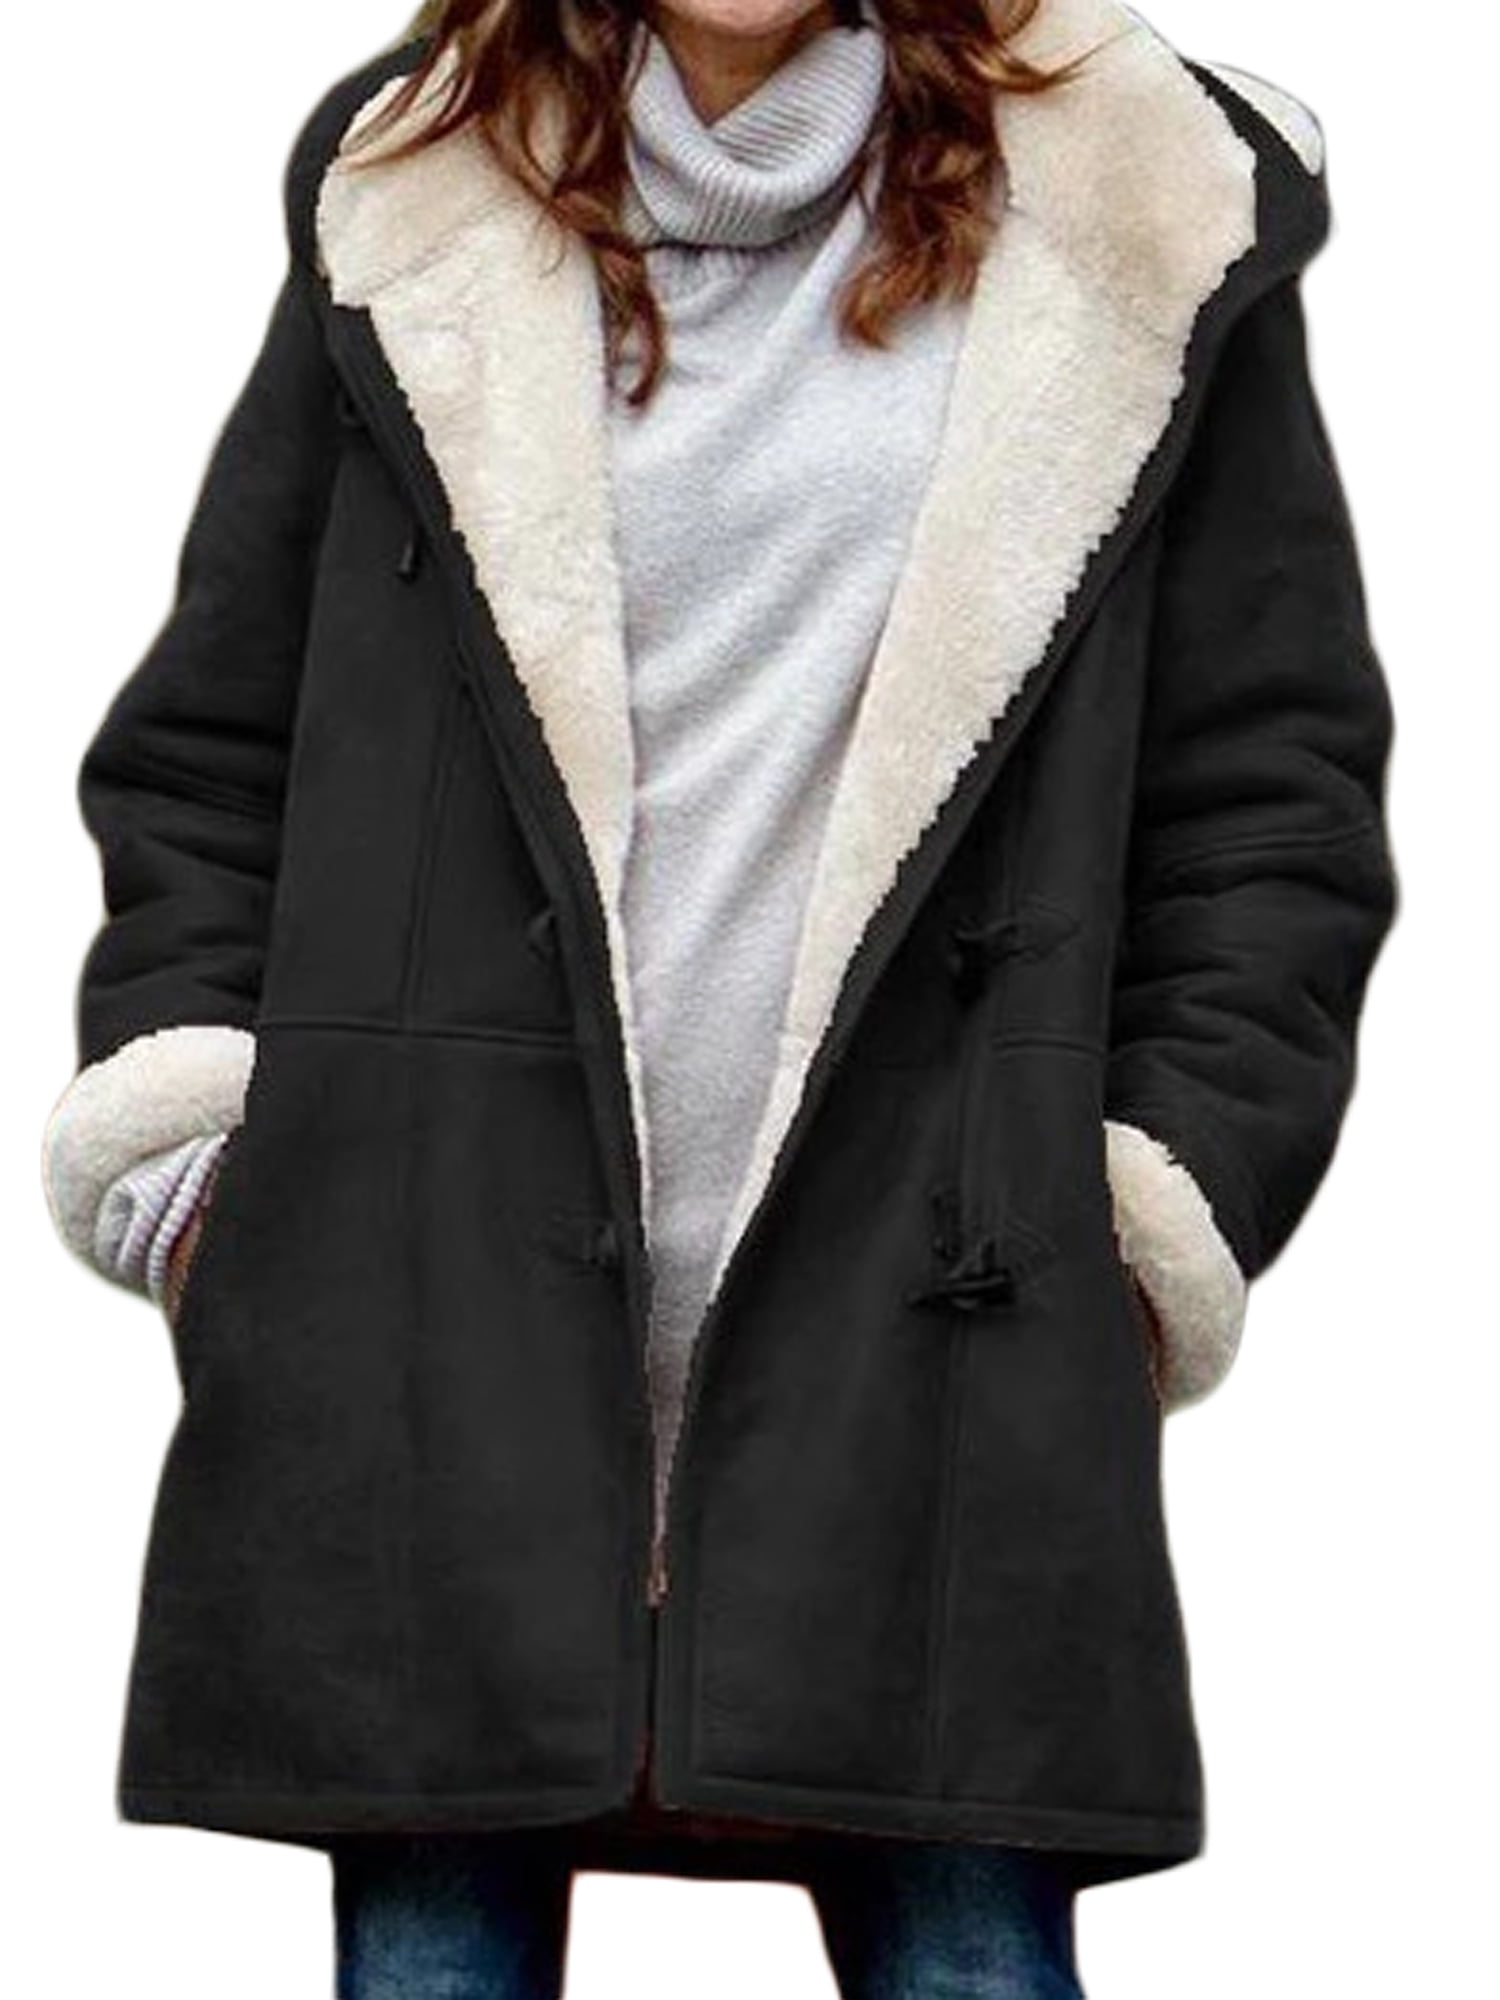 Lallc - Women's Plus Size Warm Fleece Outerwear Hooded Long Sleeve ...